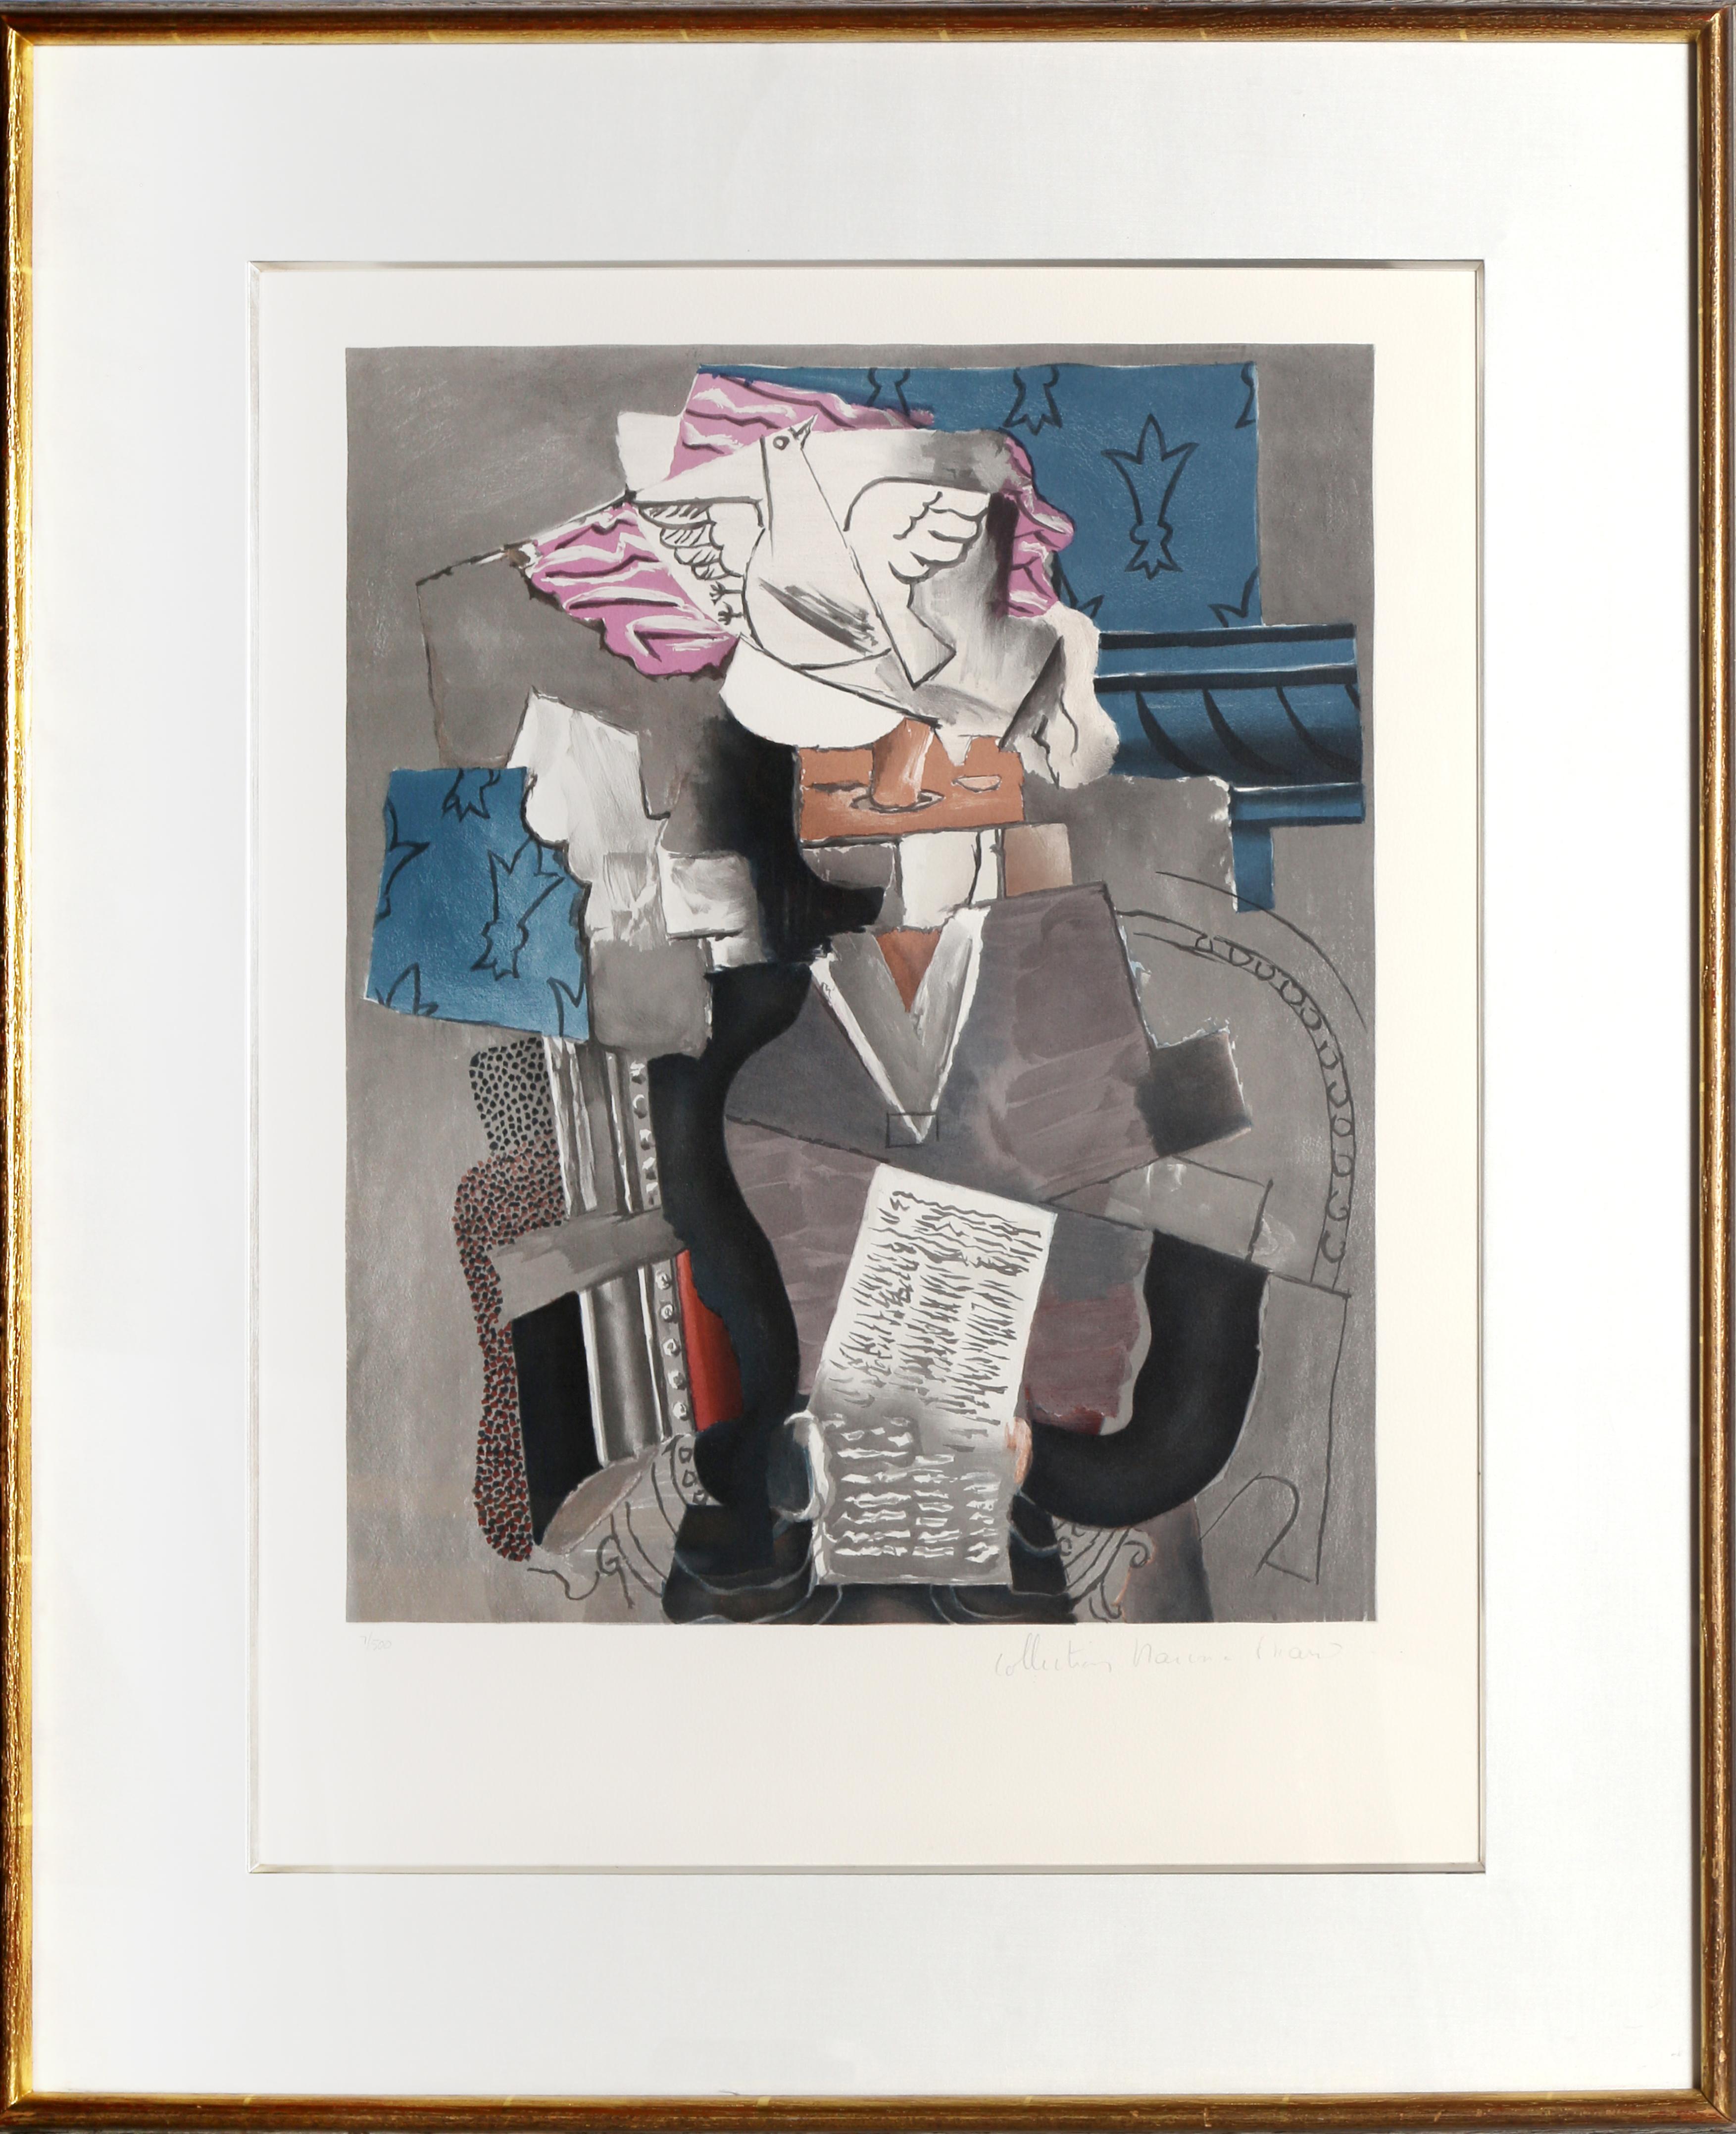 Une lithographie de la Collection S de Marina Picasso d'après le tableau de Pablo Picasso "Personnage et Colombe".  La peinture originale a été réalisée en 1913. Dans les années 1970, après la mort de Picasso, Marina Picasso, sa petite-fille, a